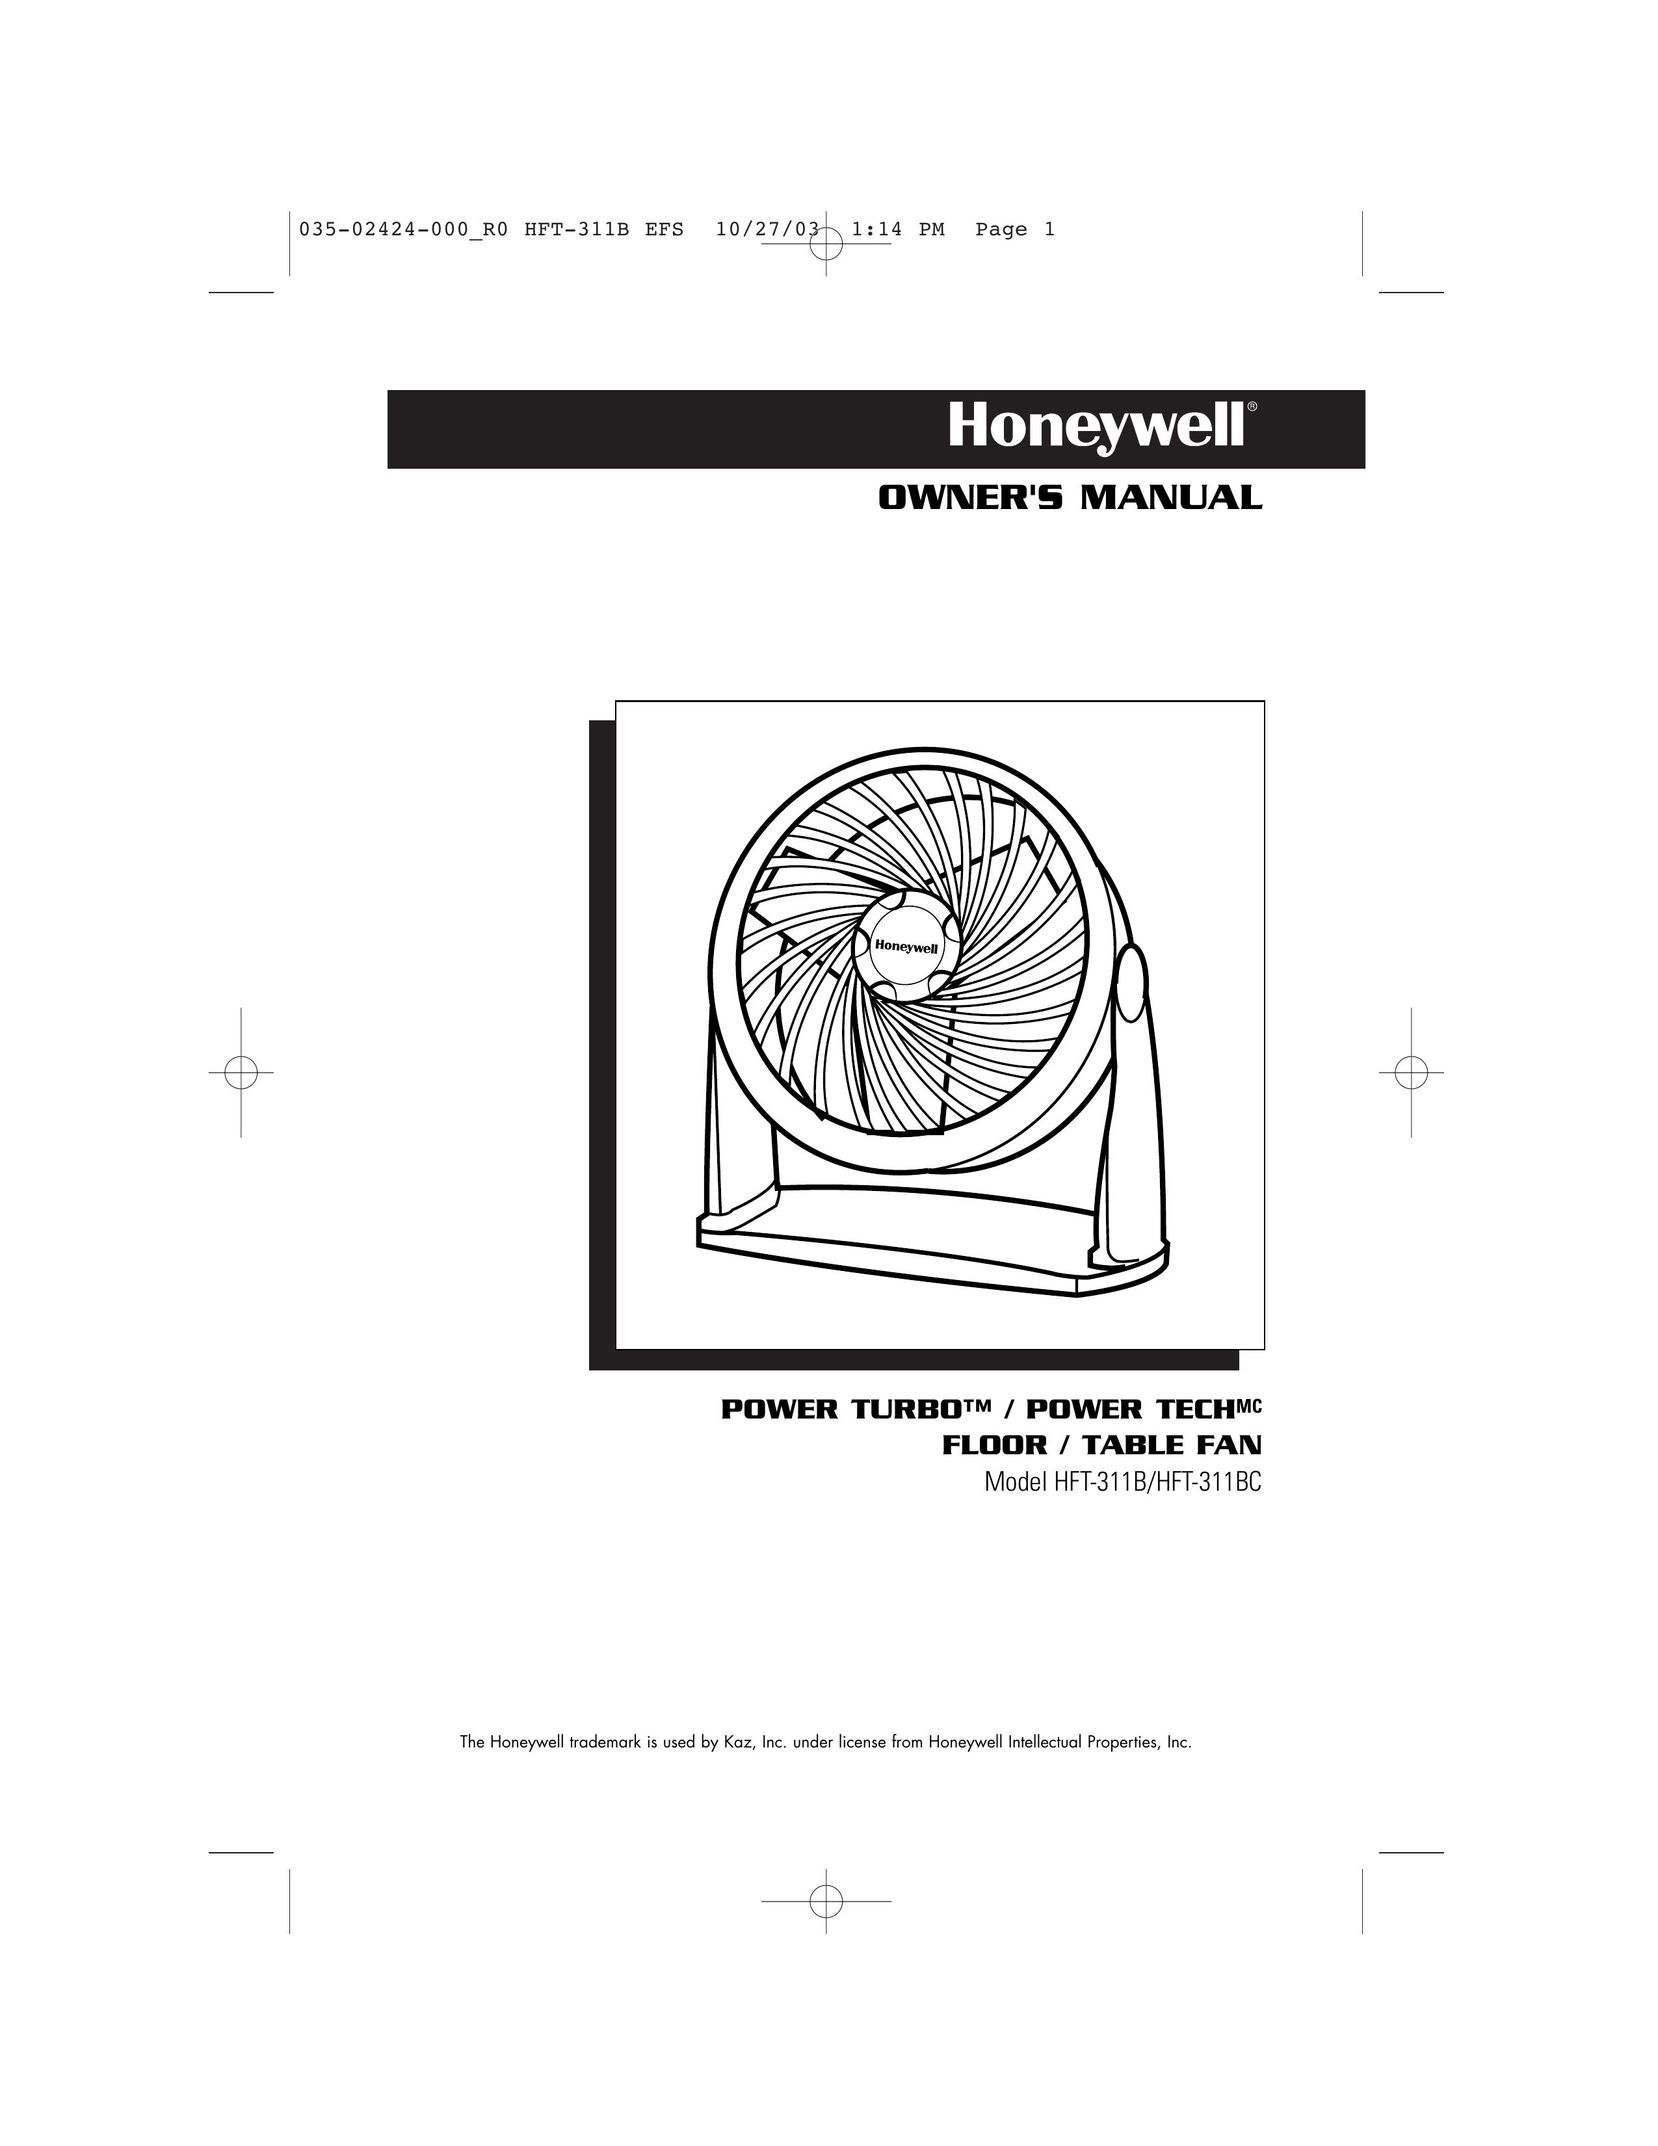 Honeywell HFT-311B Fan User Manual